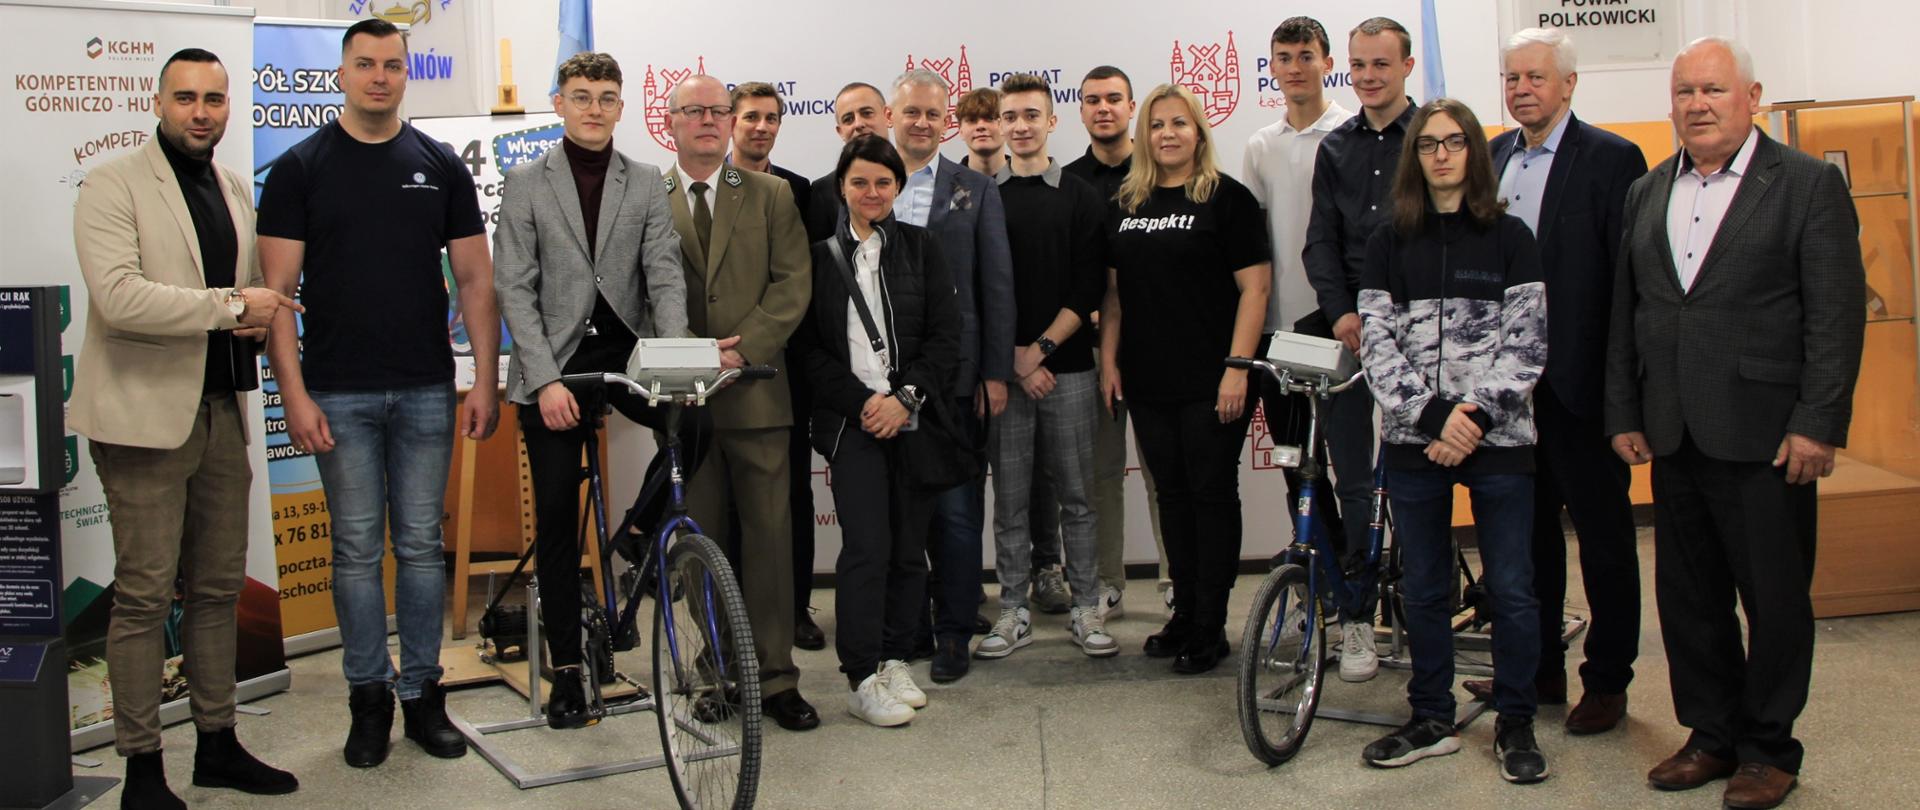 grupa ludzi stoi z dwoma rowerami na zdjęciu są też władze powiatu polkowickiego